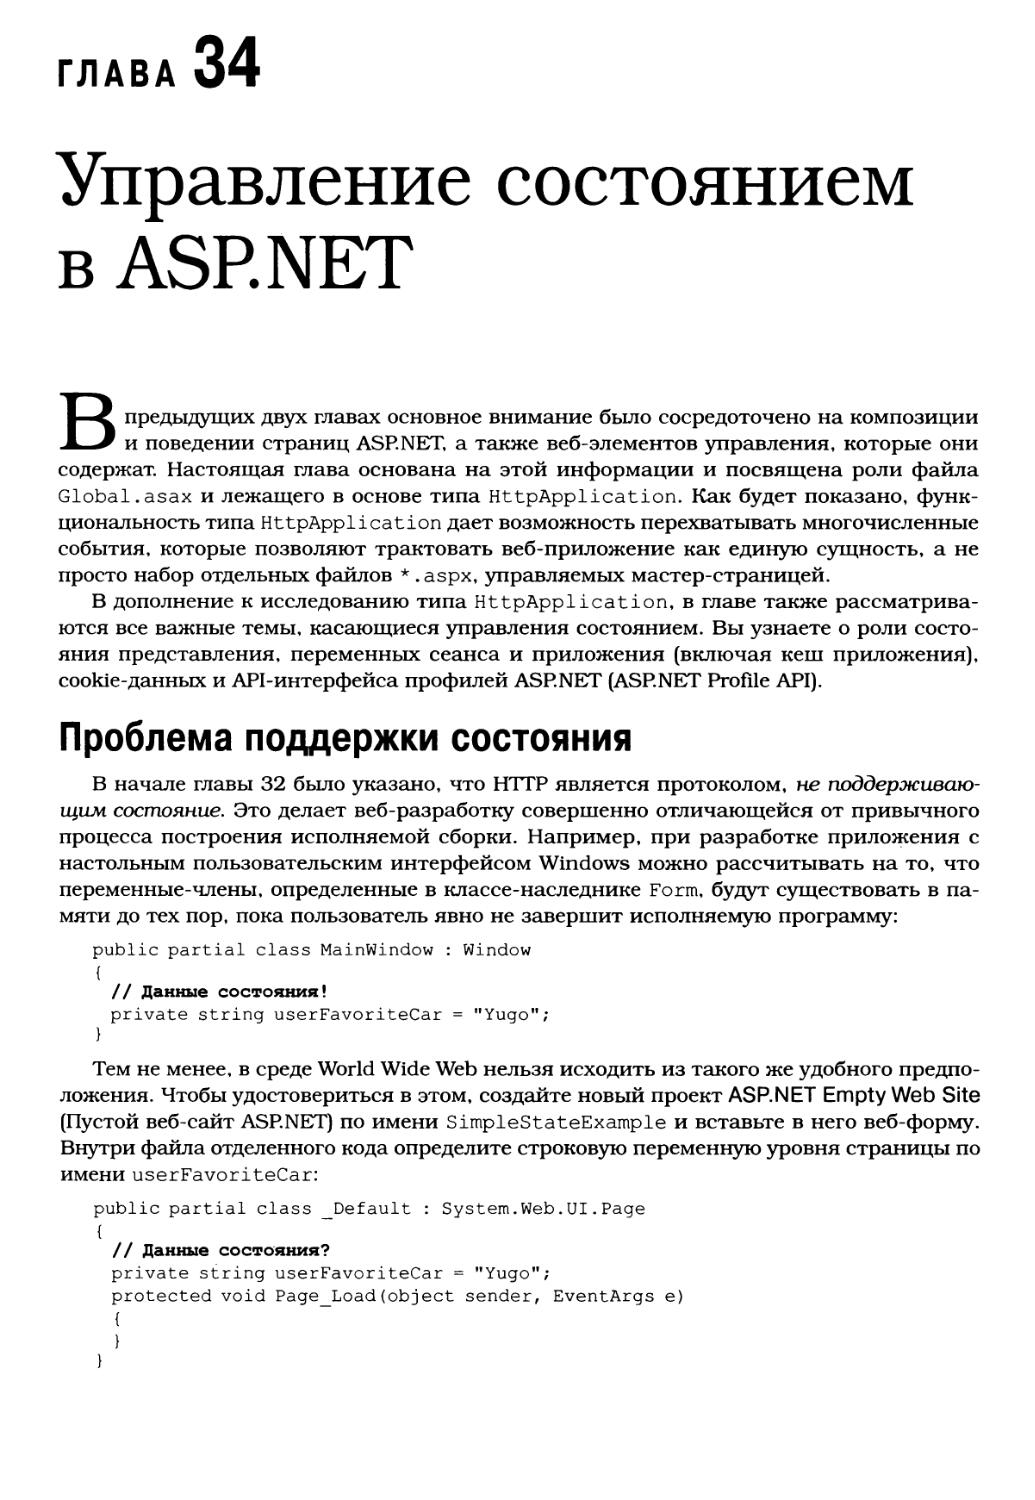 Глава 34. Управление состоянием в ASP.NET
Проблема поддержки состояния